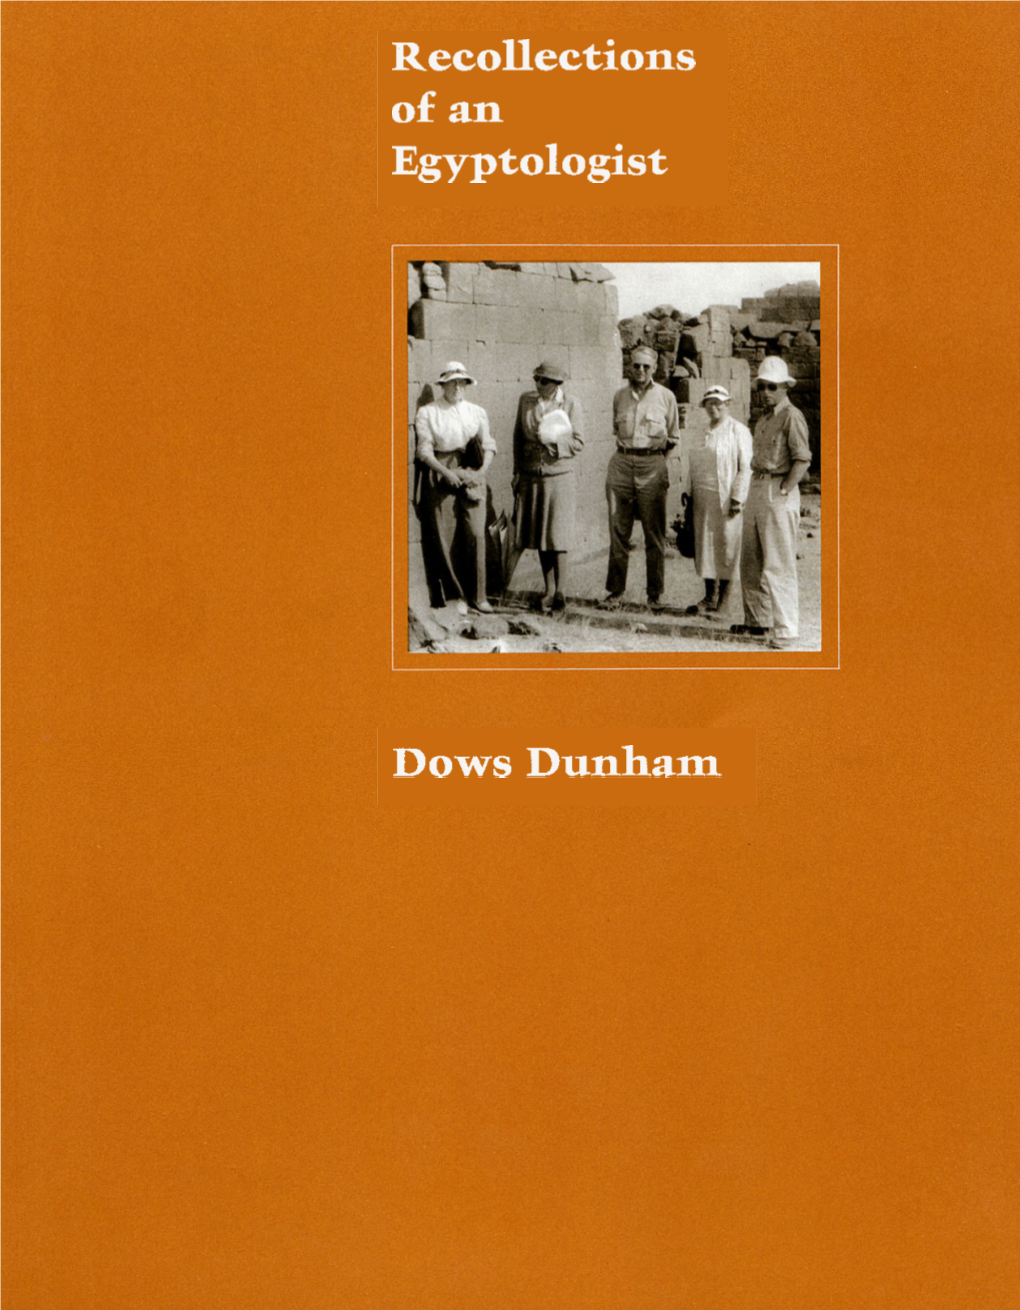 Dunham, Dows. Recollections of an Egyptologist. Boston